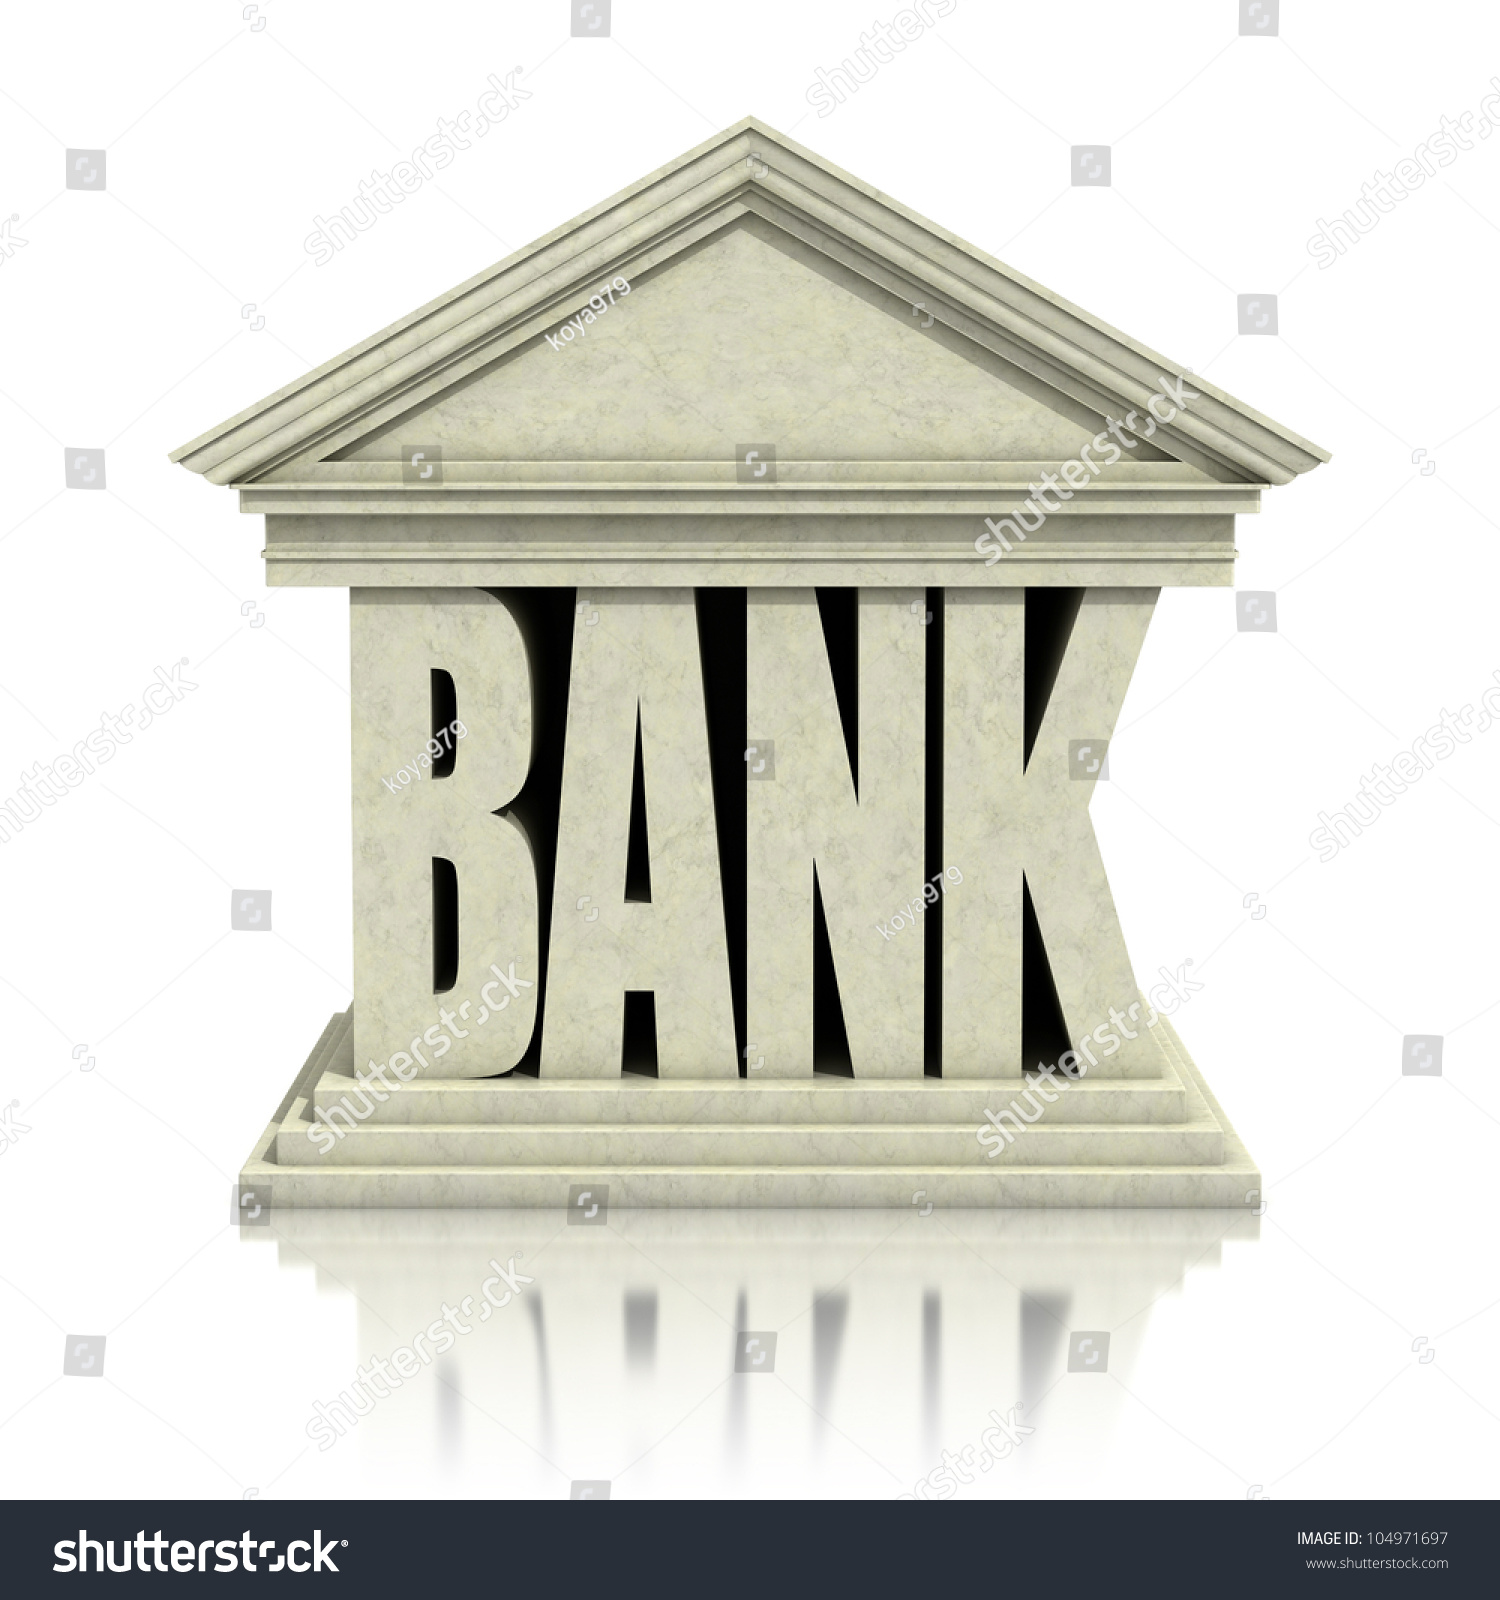 bank loan clipart - photo #32